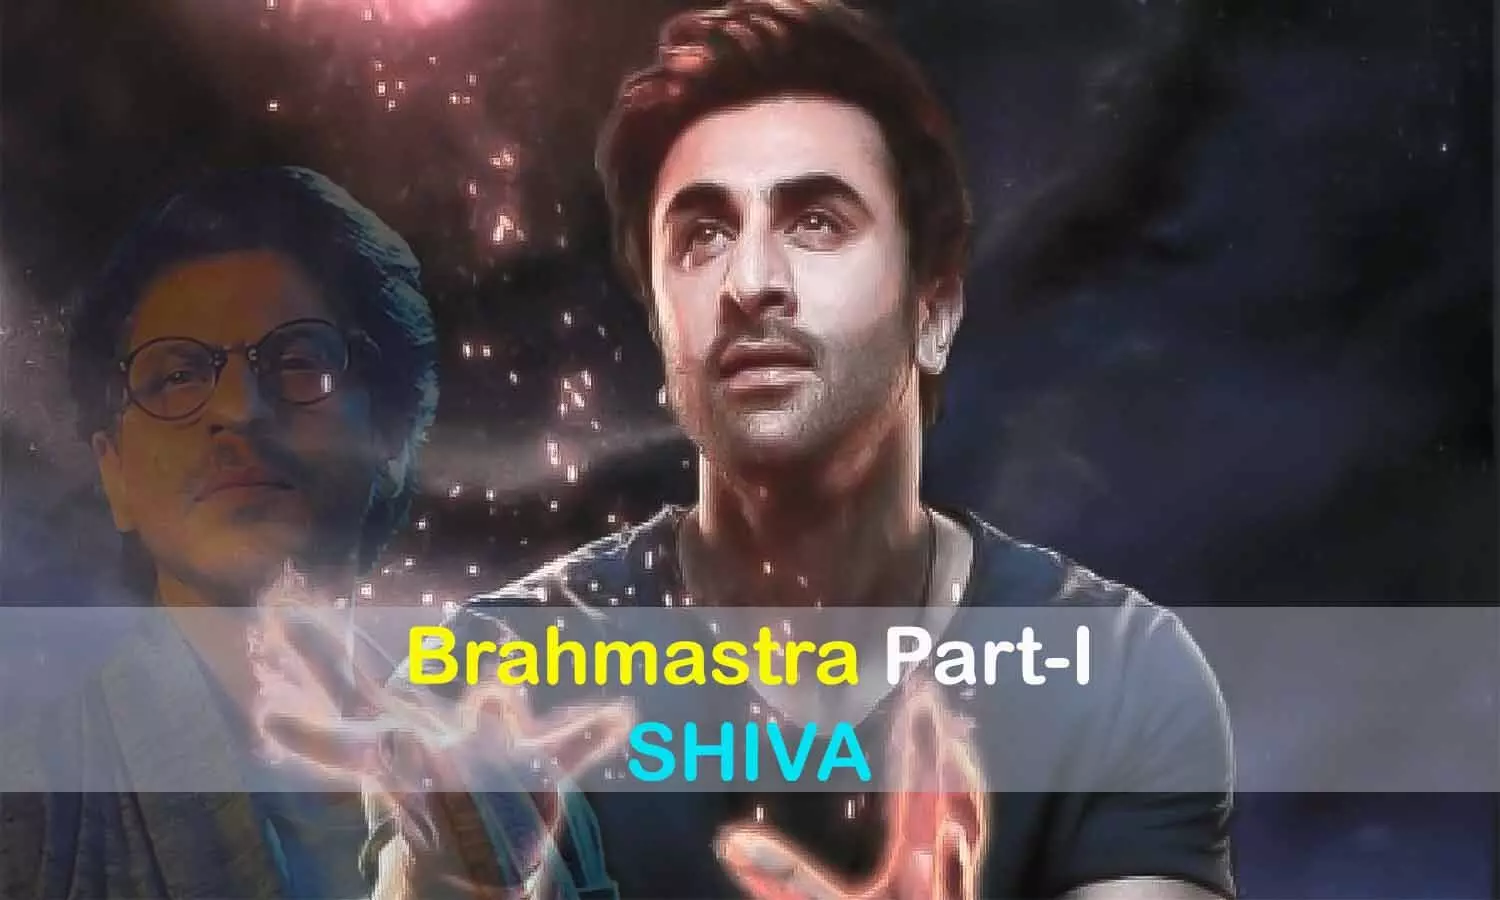 Brahmastra का विदेशों में भी डंका: दुनियाभर की फिल्मों को पछाड़ने वाली पहली बॉलीवुड फिल्म बनी, जानिए Box Office Collection